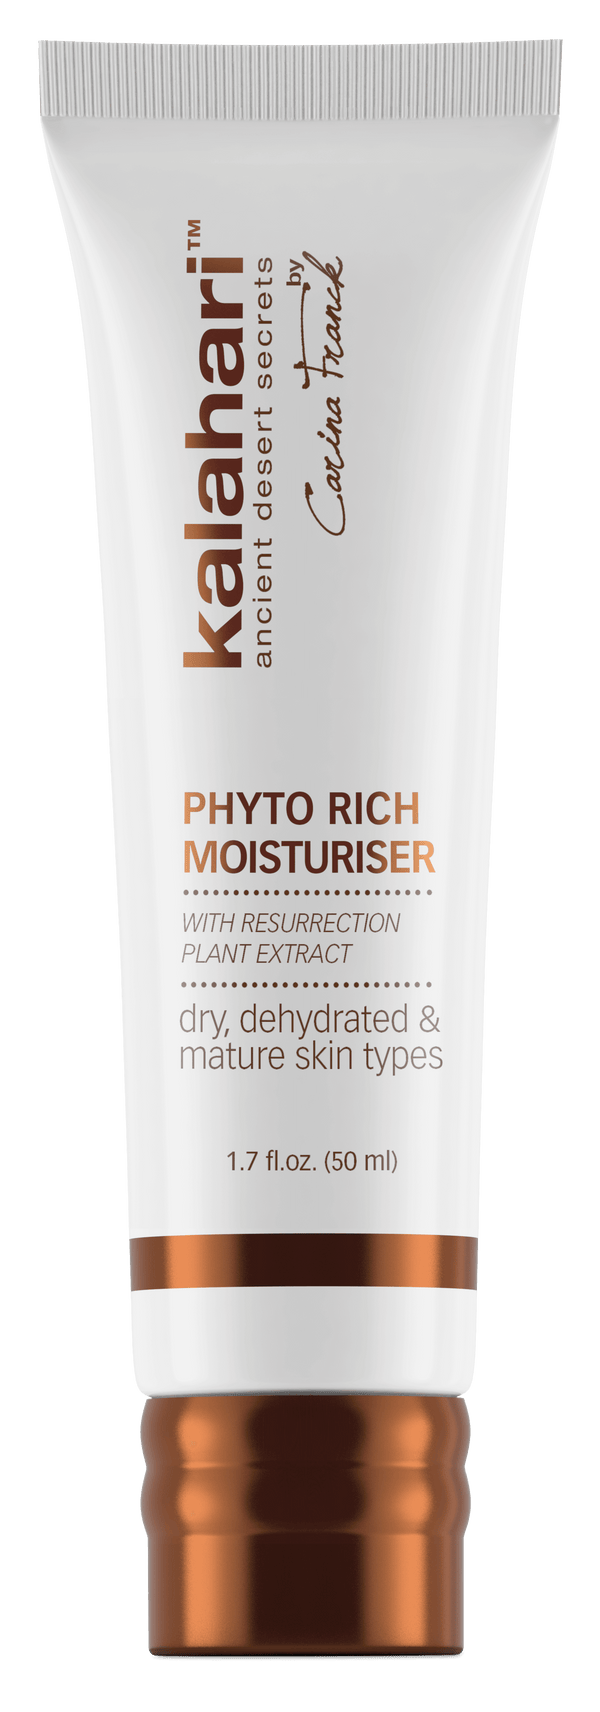 Phyto rich moisturiser